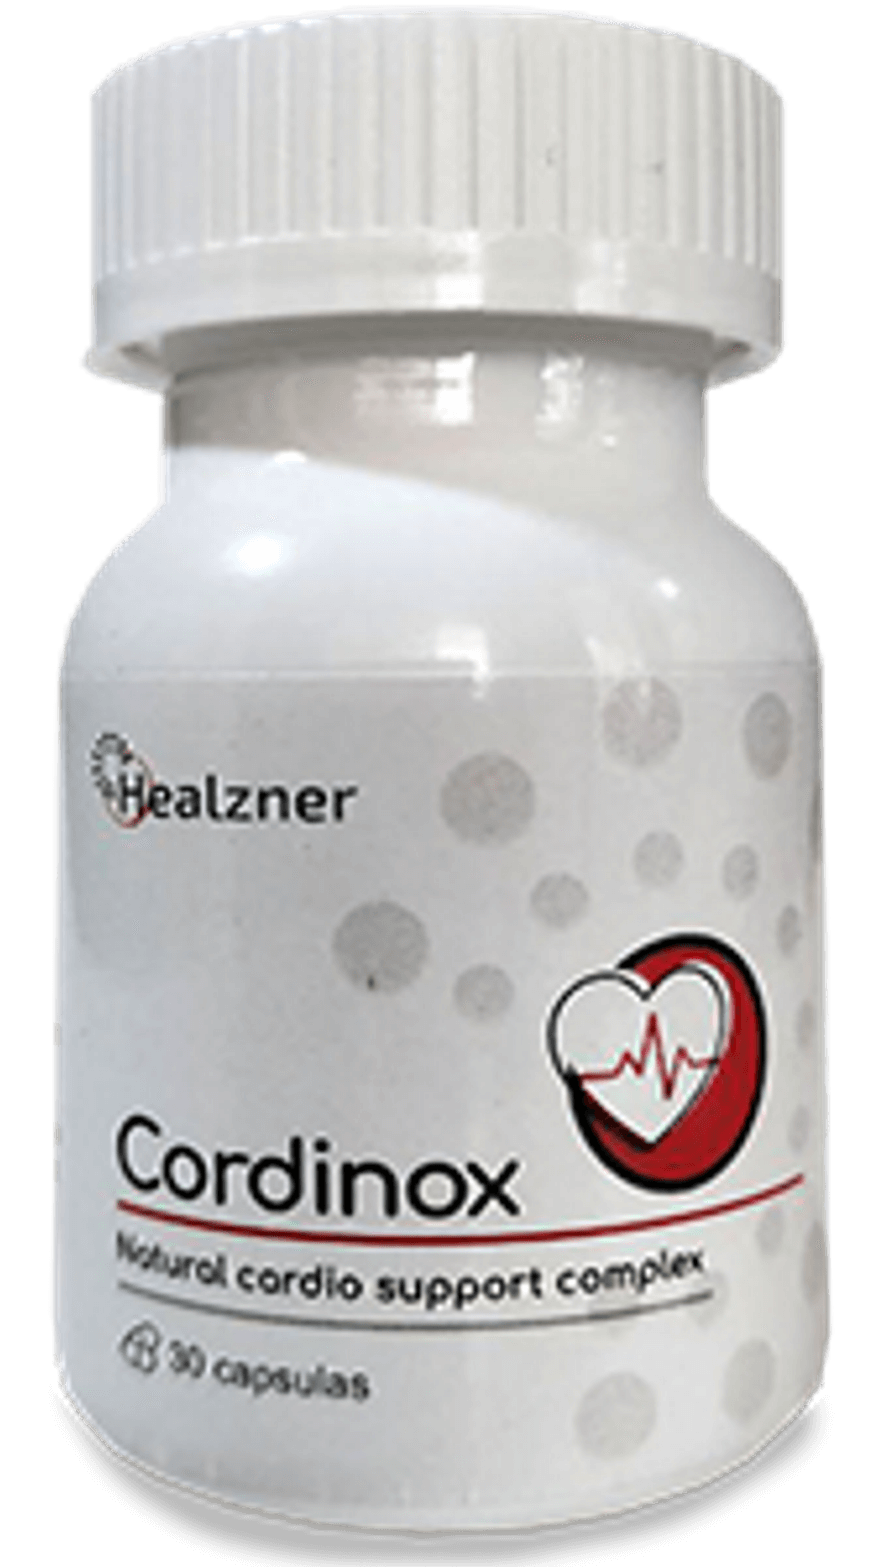 Cordinox jar